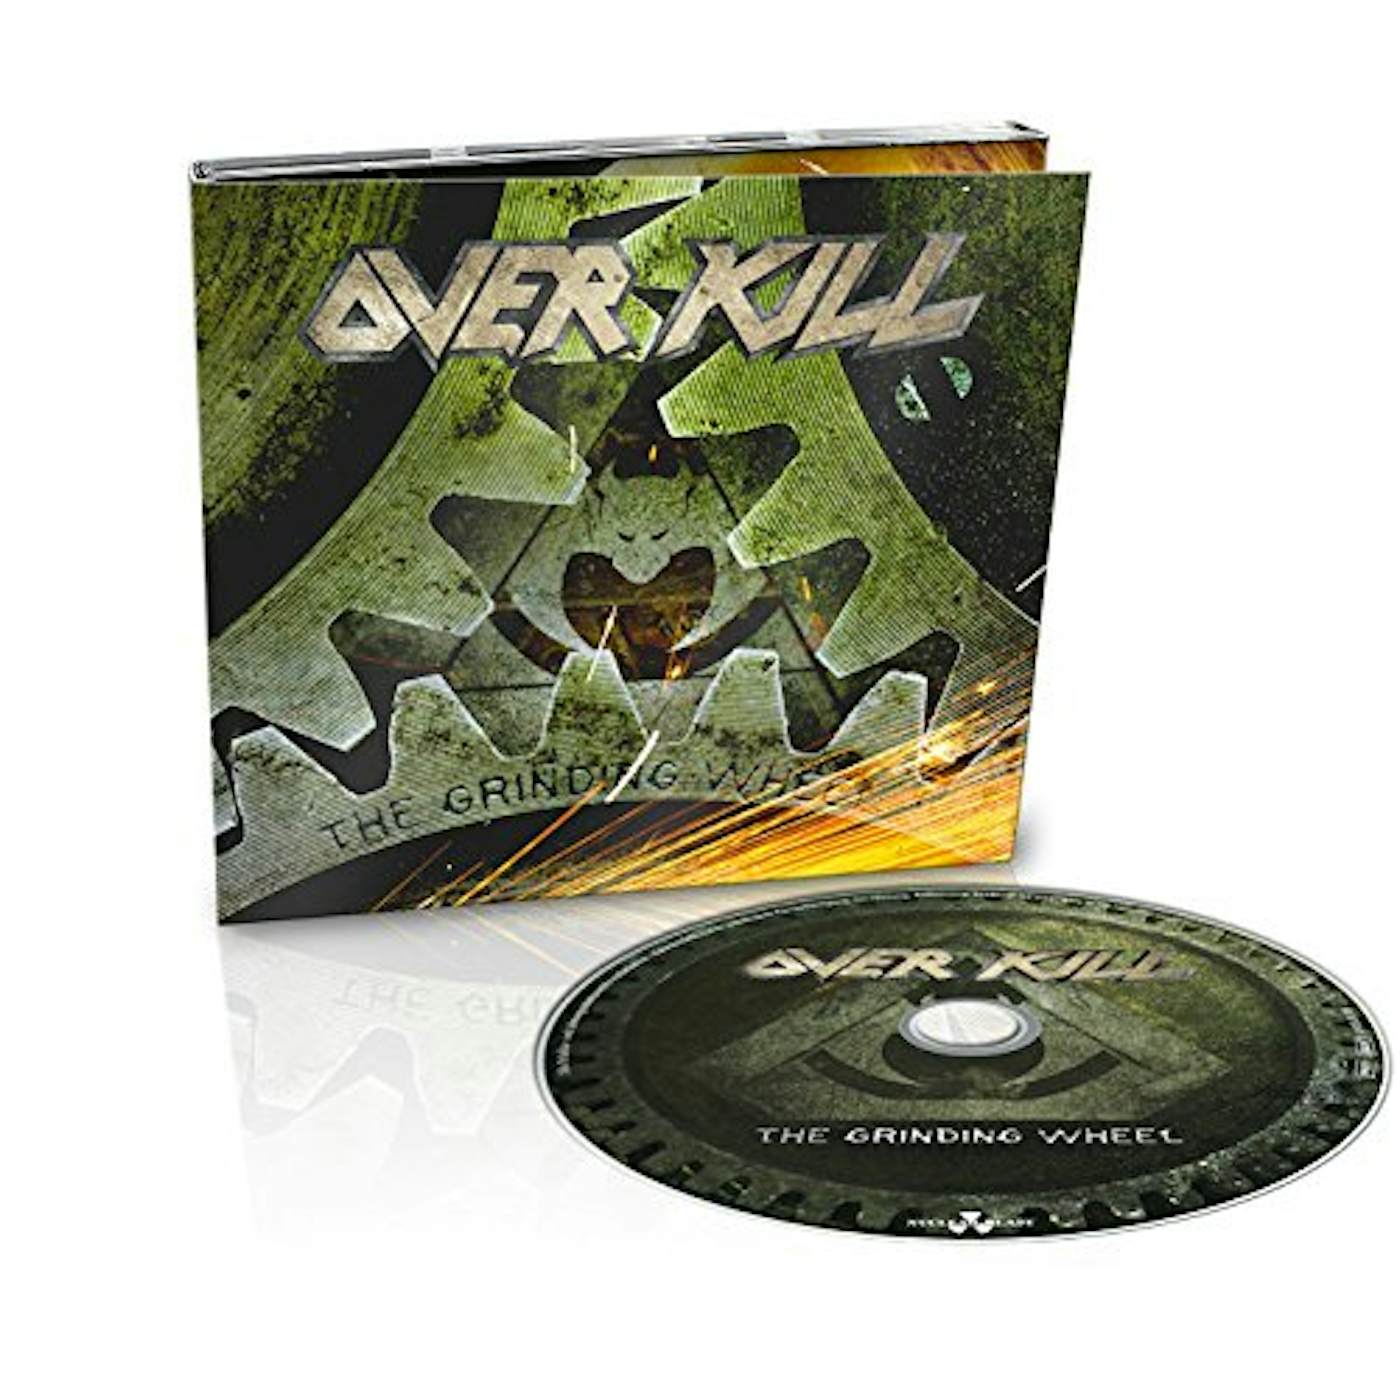 Overkill GRINDING WHEEL CD